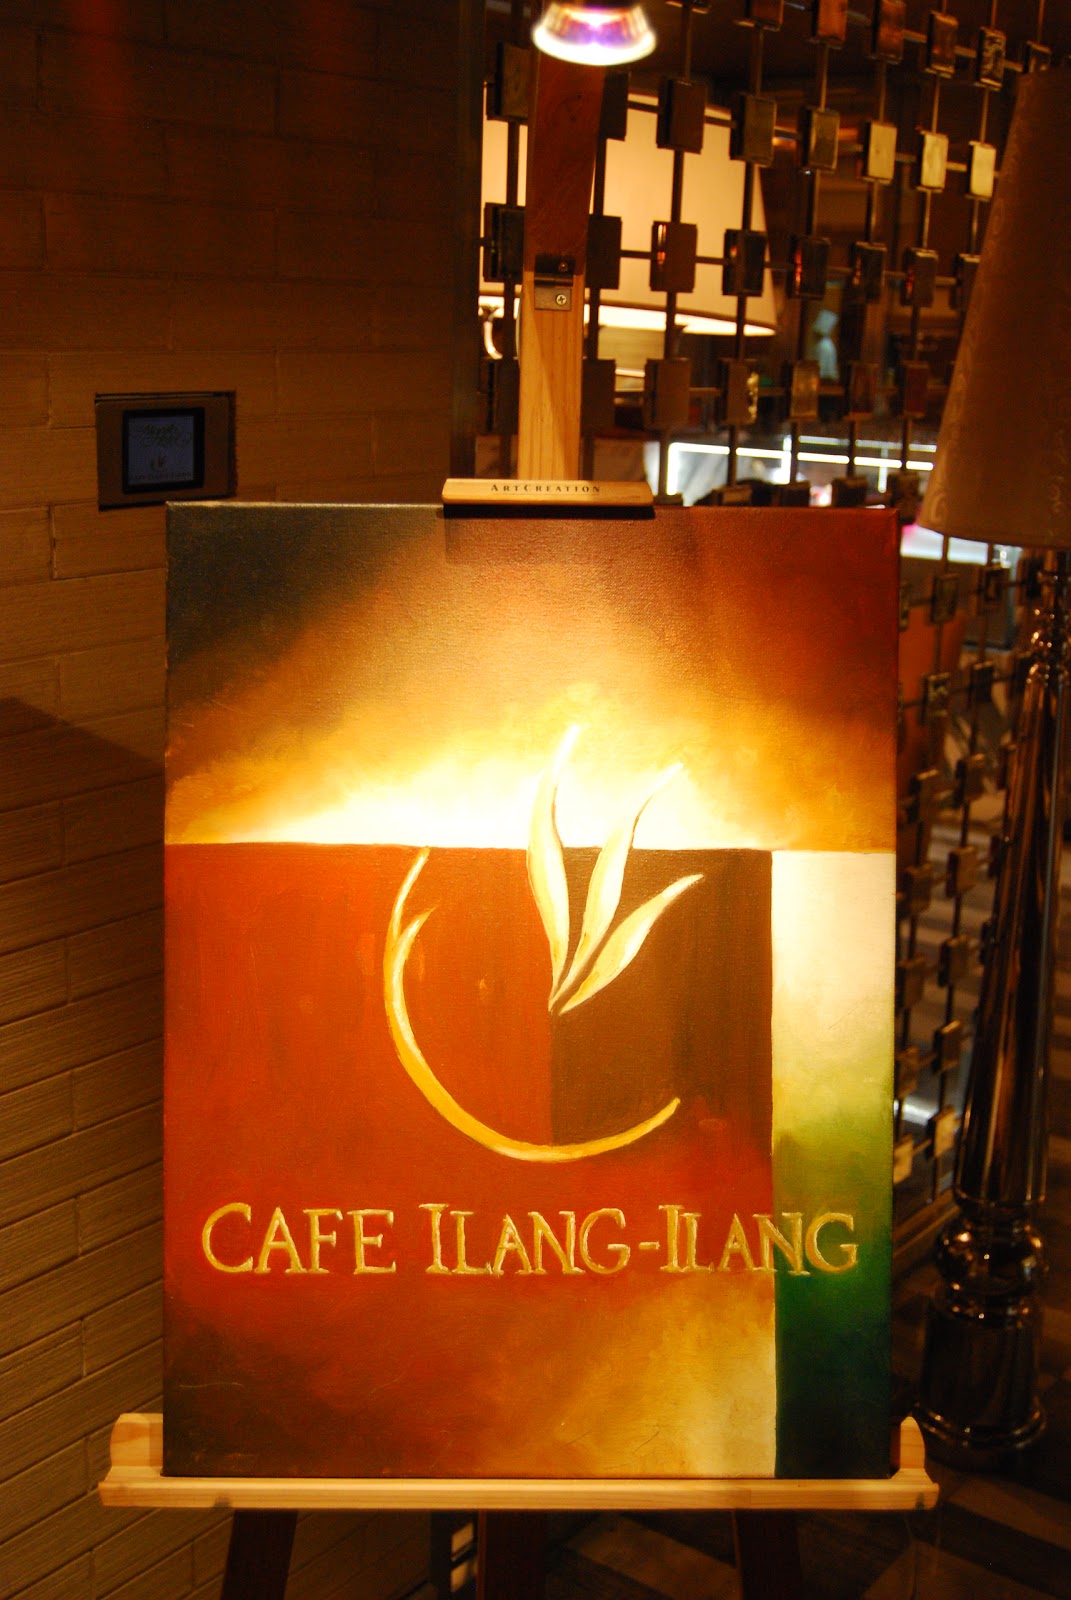 Dining in Cafe IlangIlang at Manila Hotel